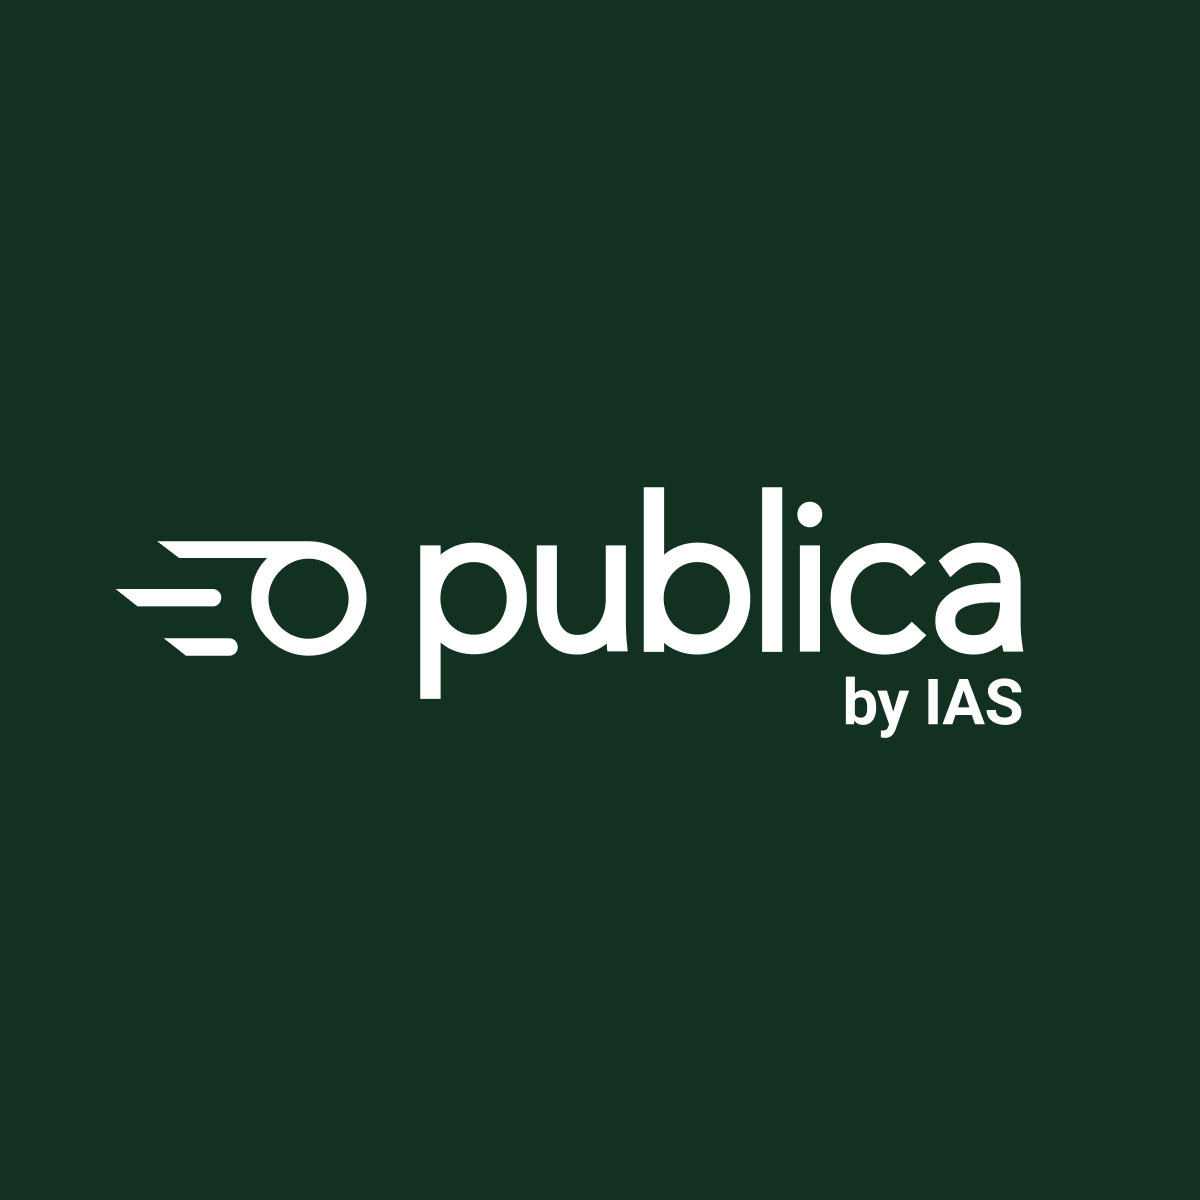 Publica by IAS logo lockup